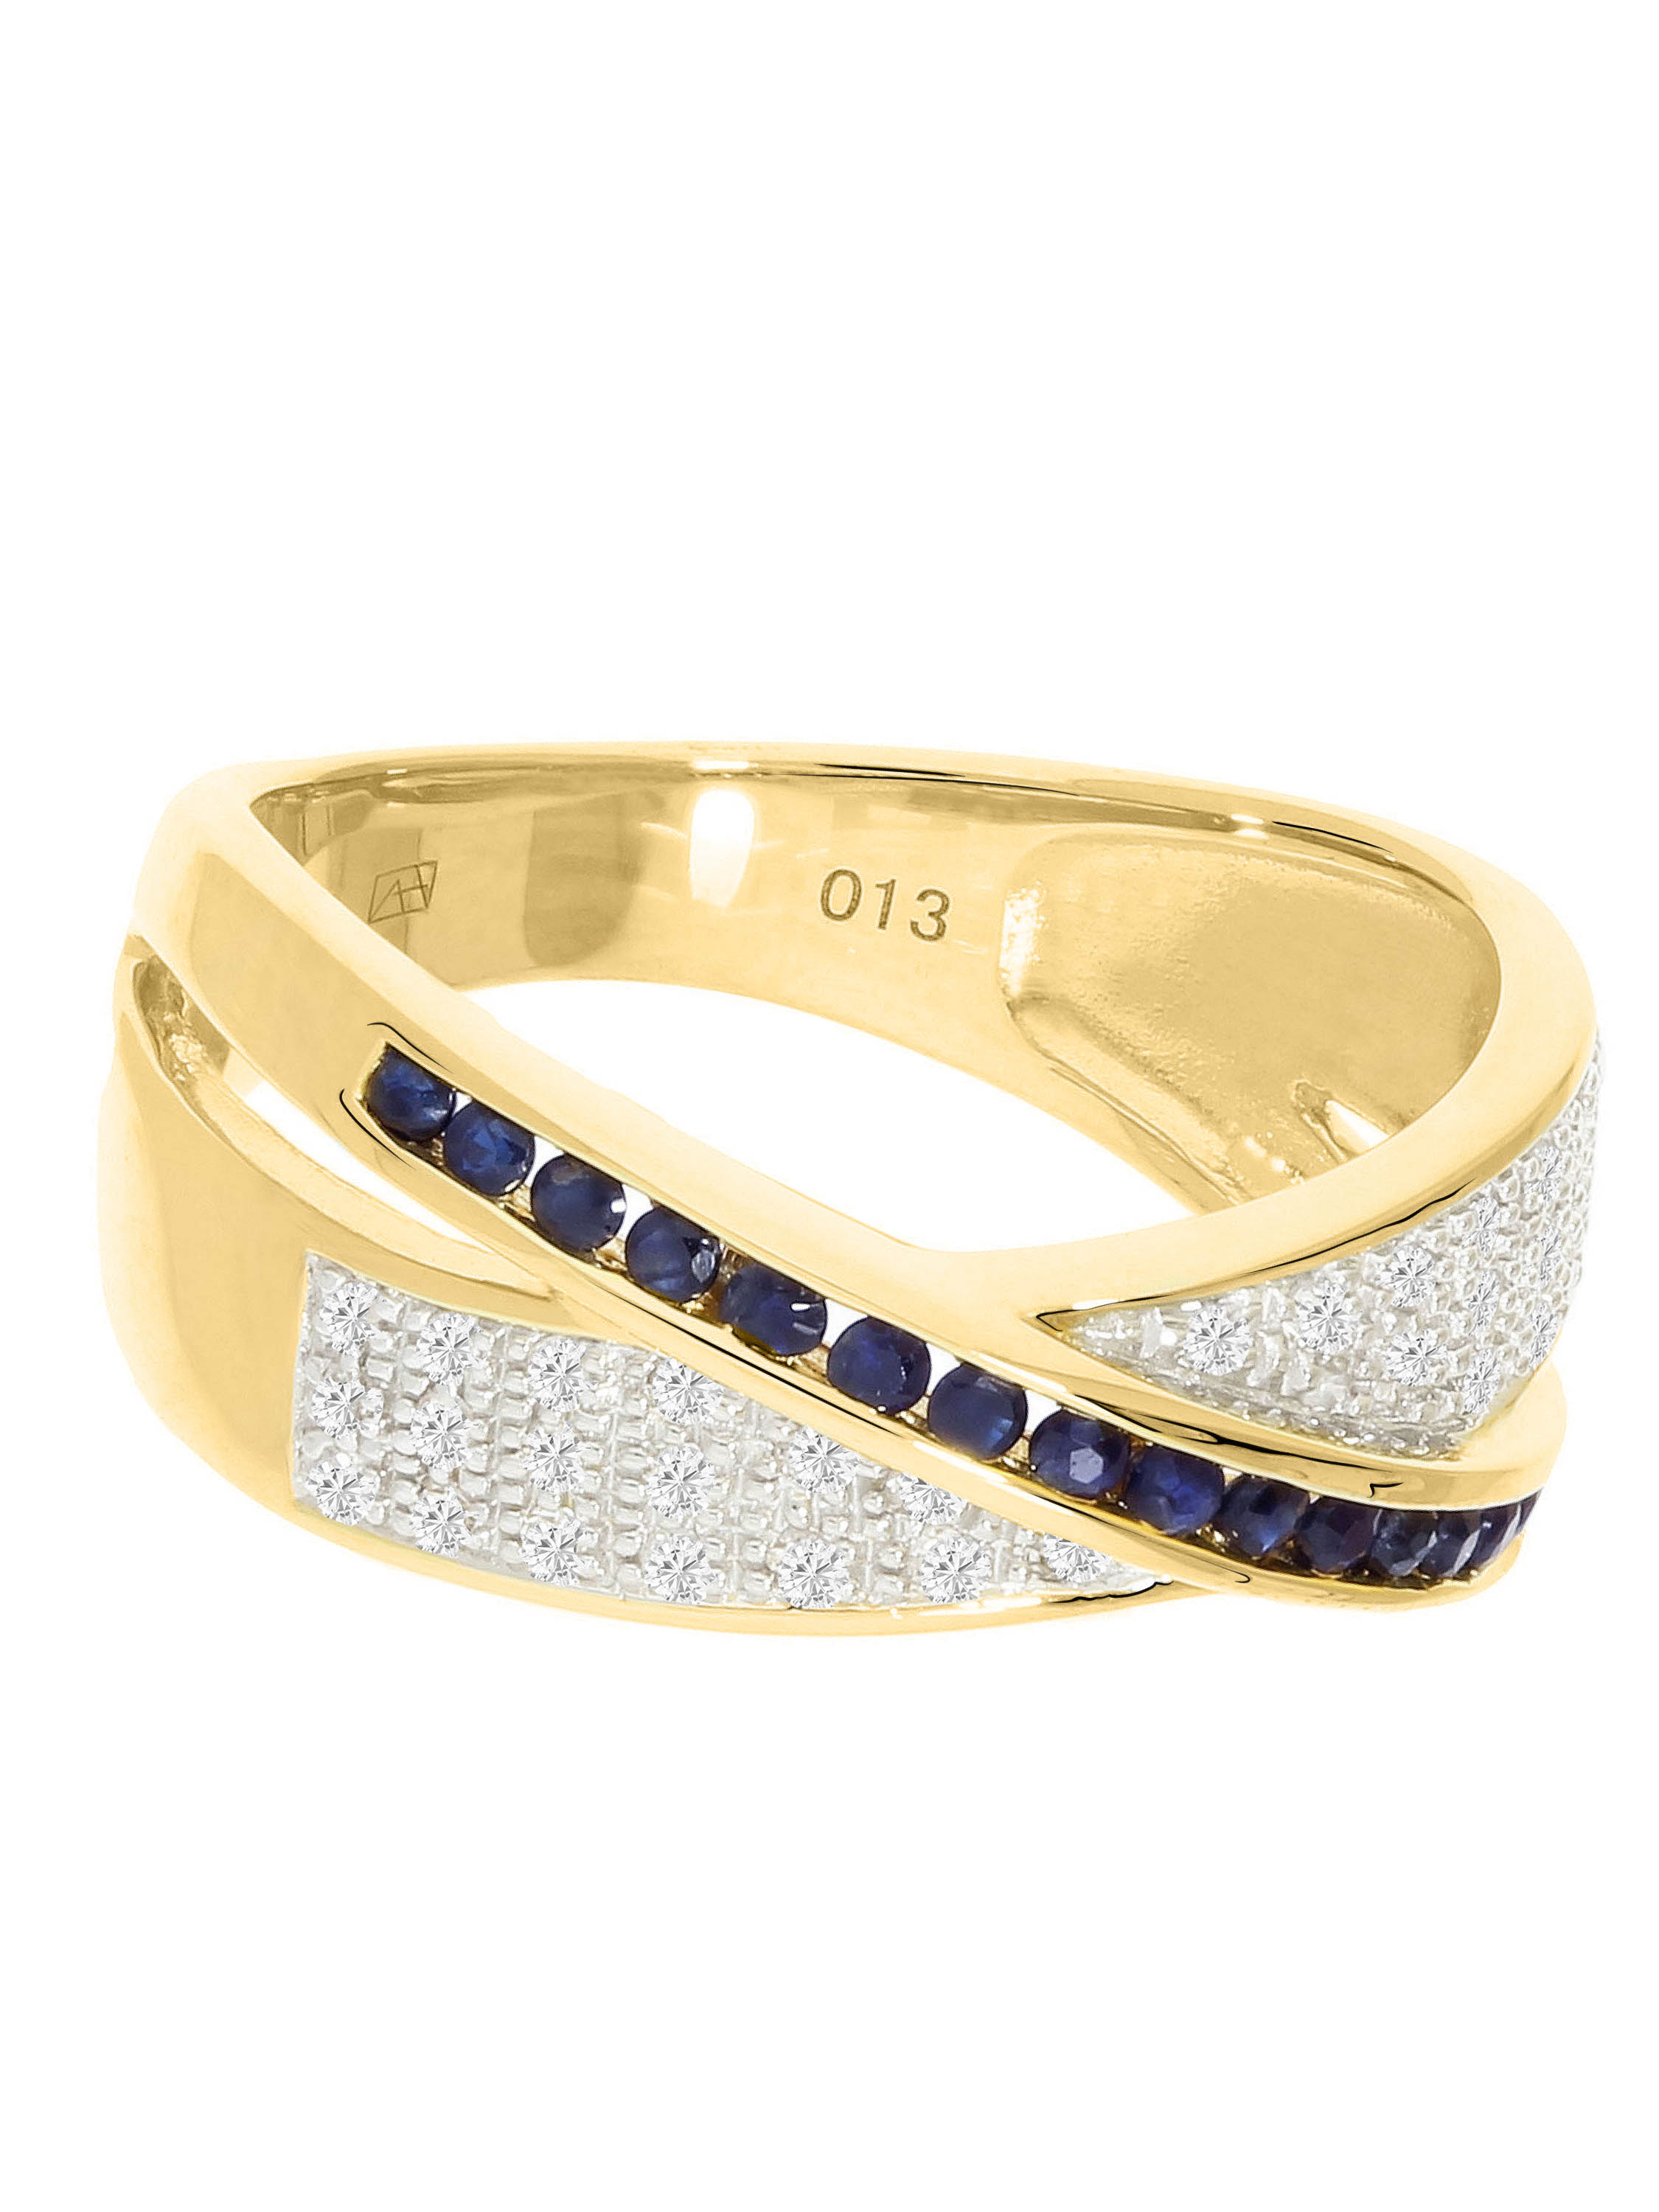 Melvena - Saphir & Diamant Ring mit Edelstein 585 Gold - 0,13ct. - Größe 50